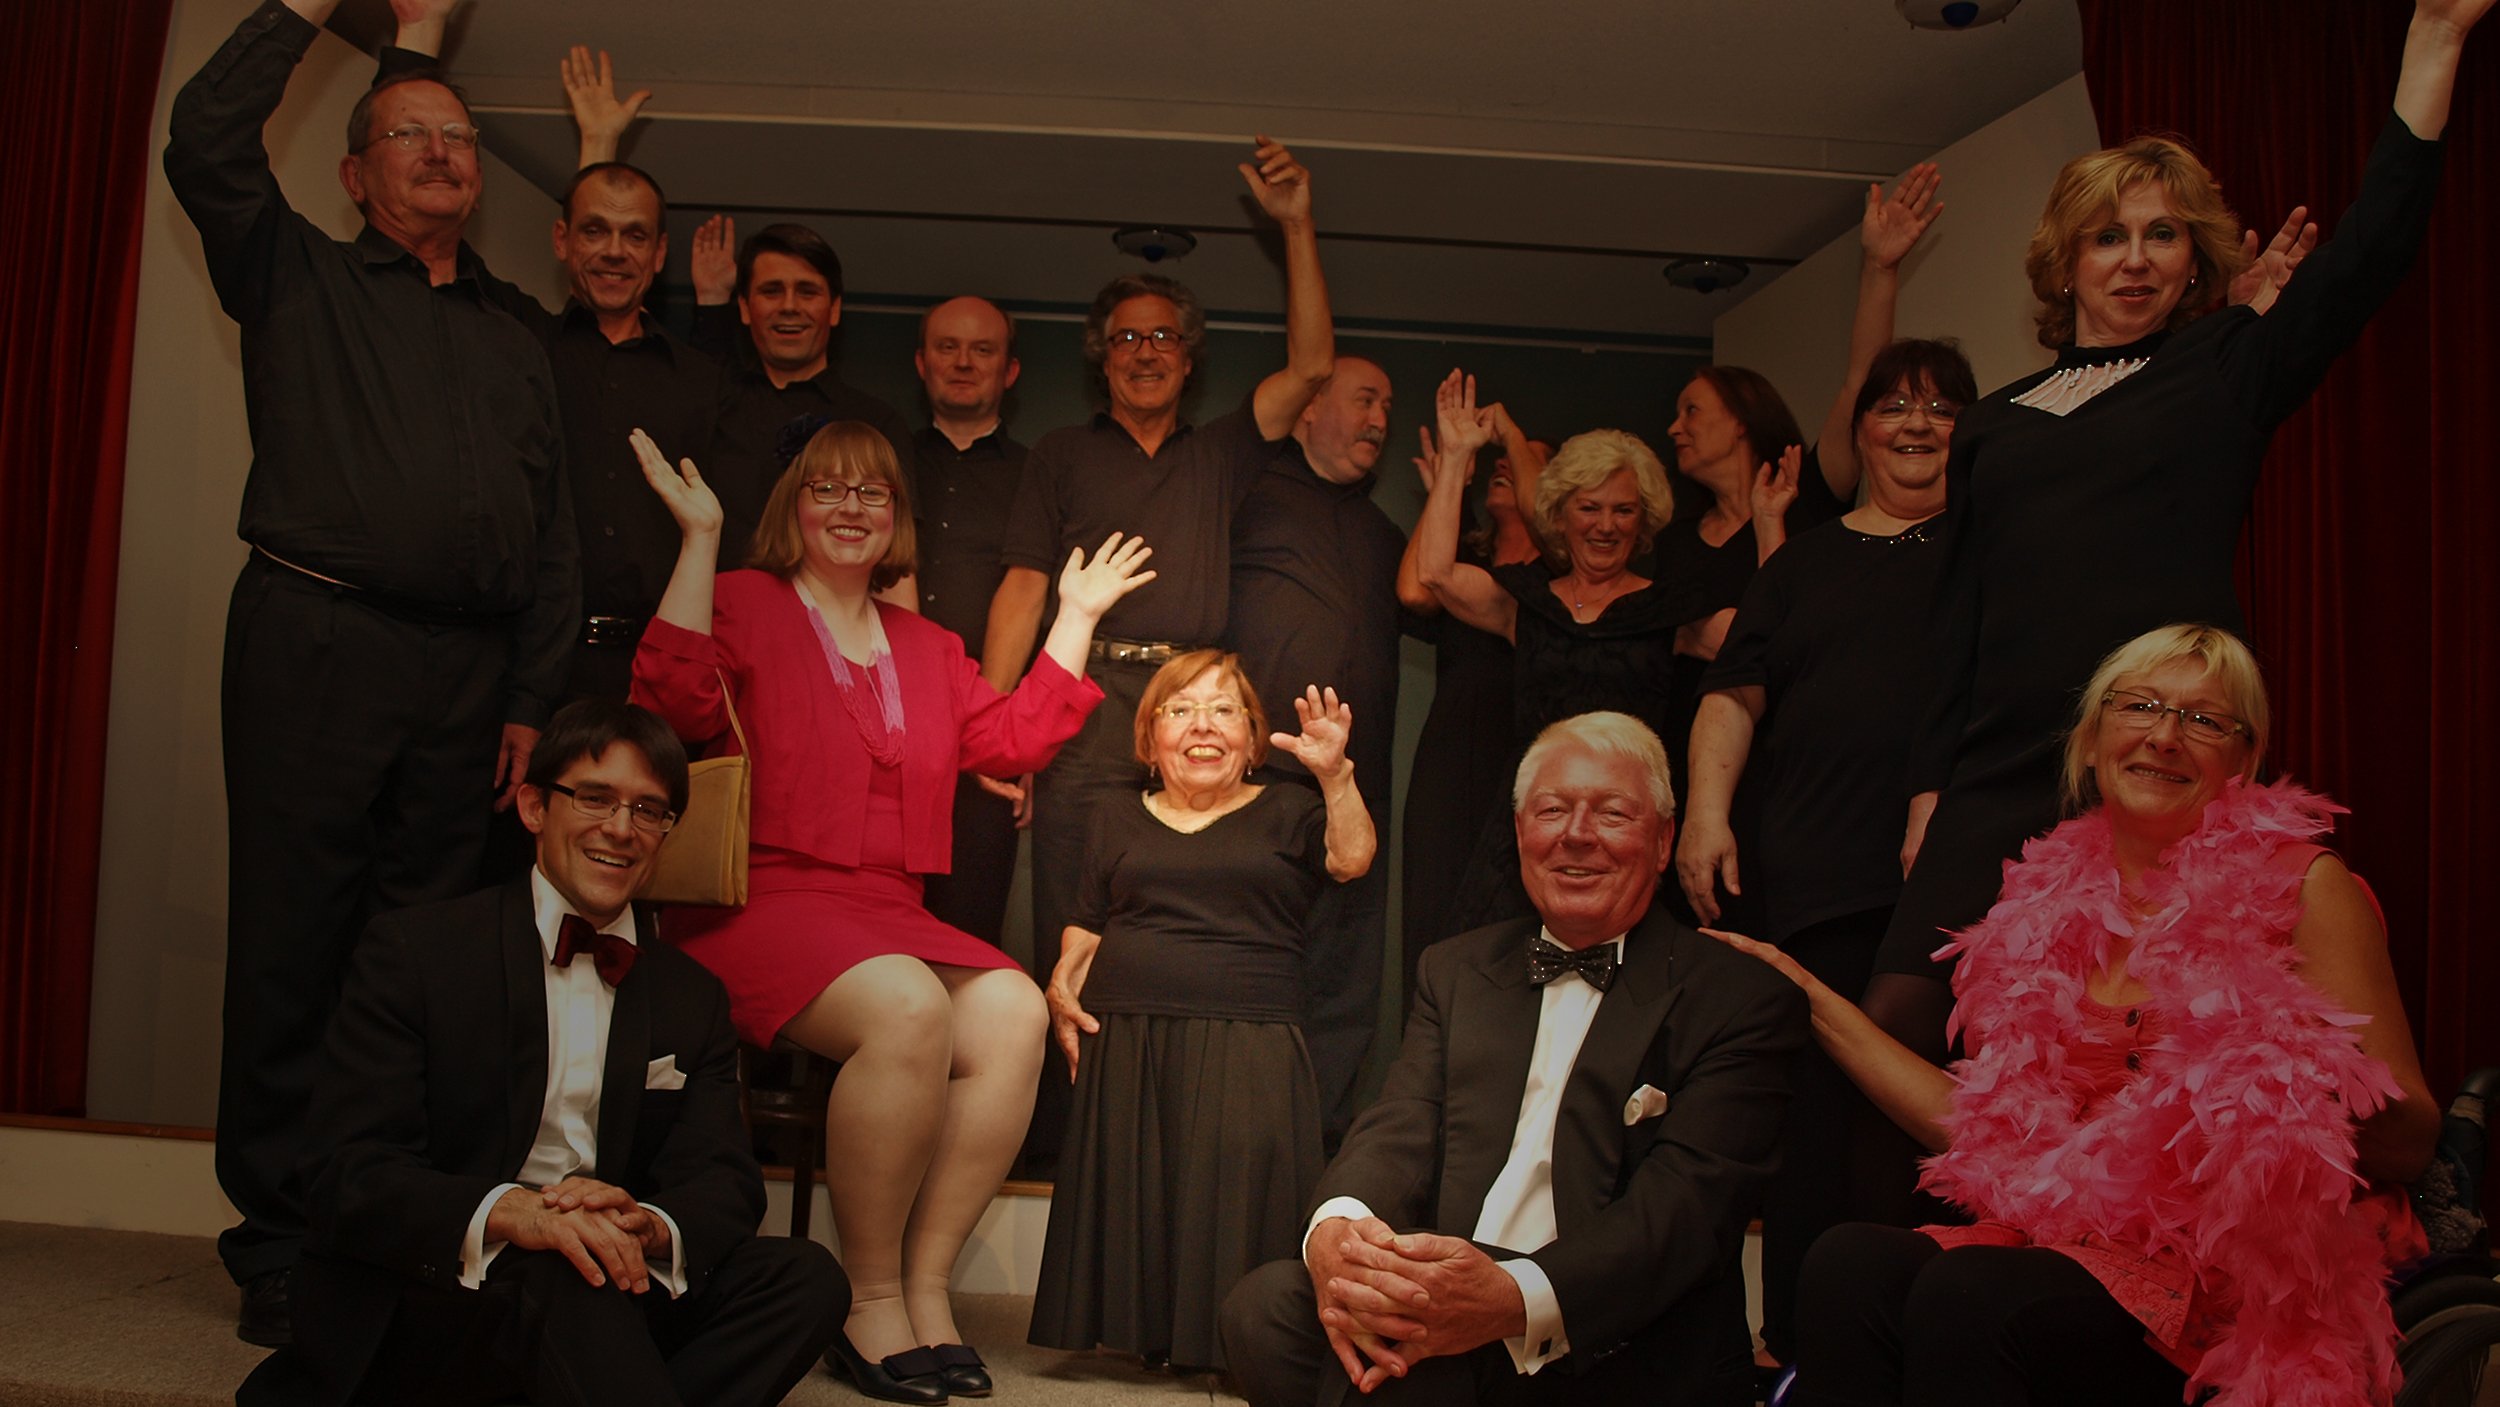 Foto: Gruppenbild der Theatergruppe der FDST, circa 2010, in der Mitte Ingrid Koch, winkend